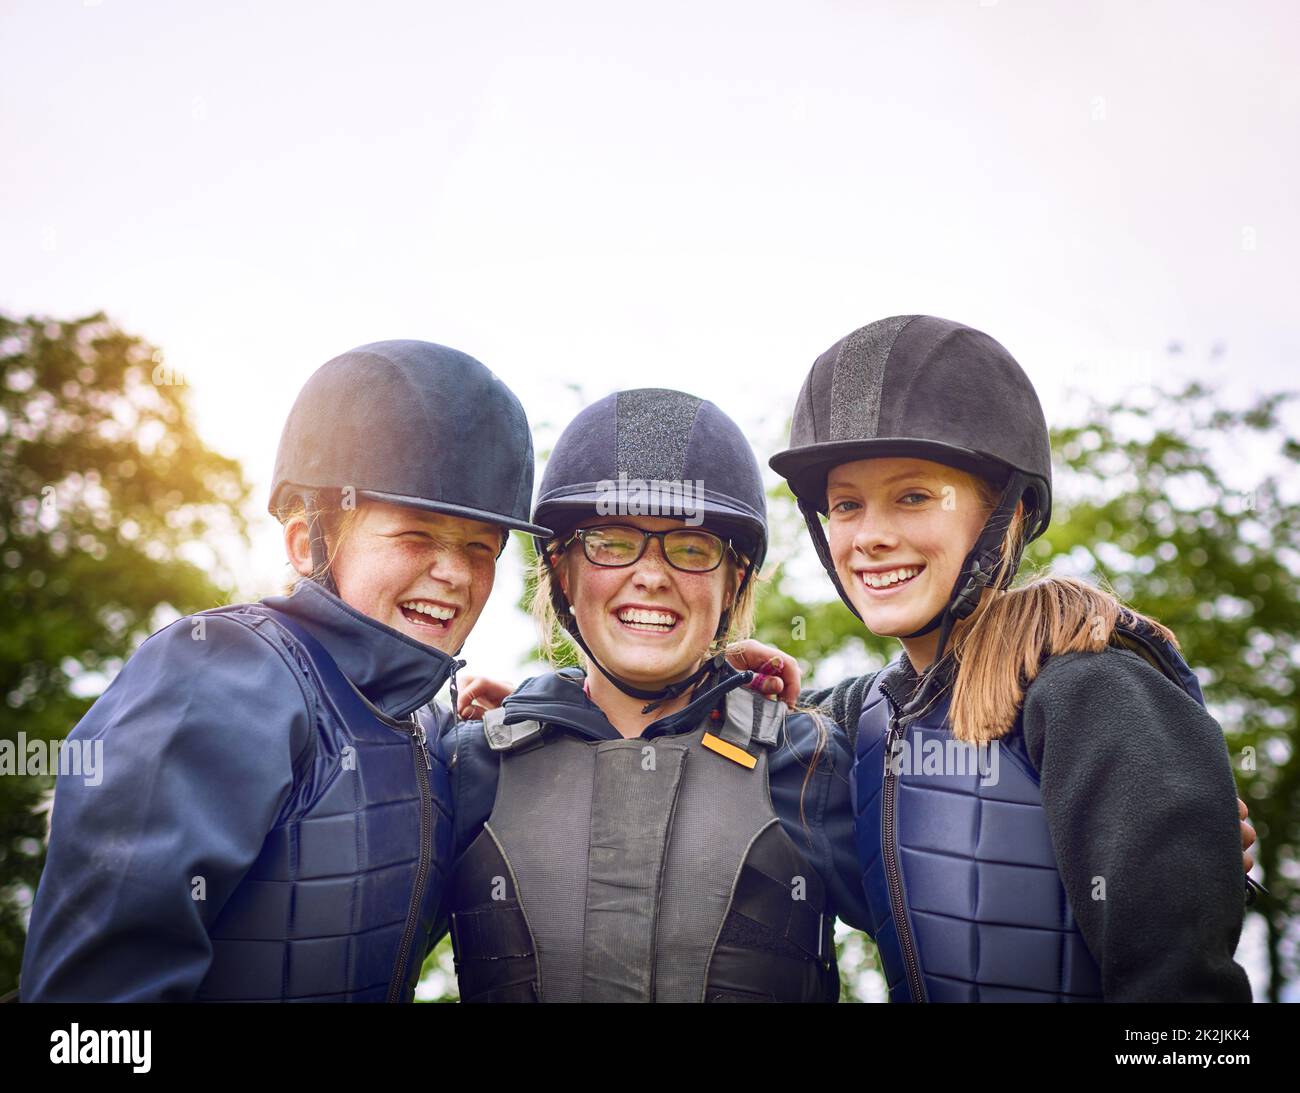 Une équipe équestre ressemble davantage à la famille. Portrait d'un groupe de jeunes amis qui vont à cheval à l'extérieur. Banque D'Images